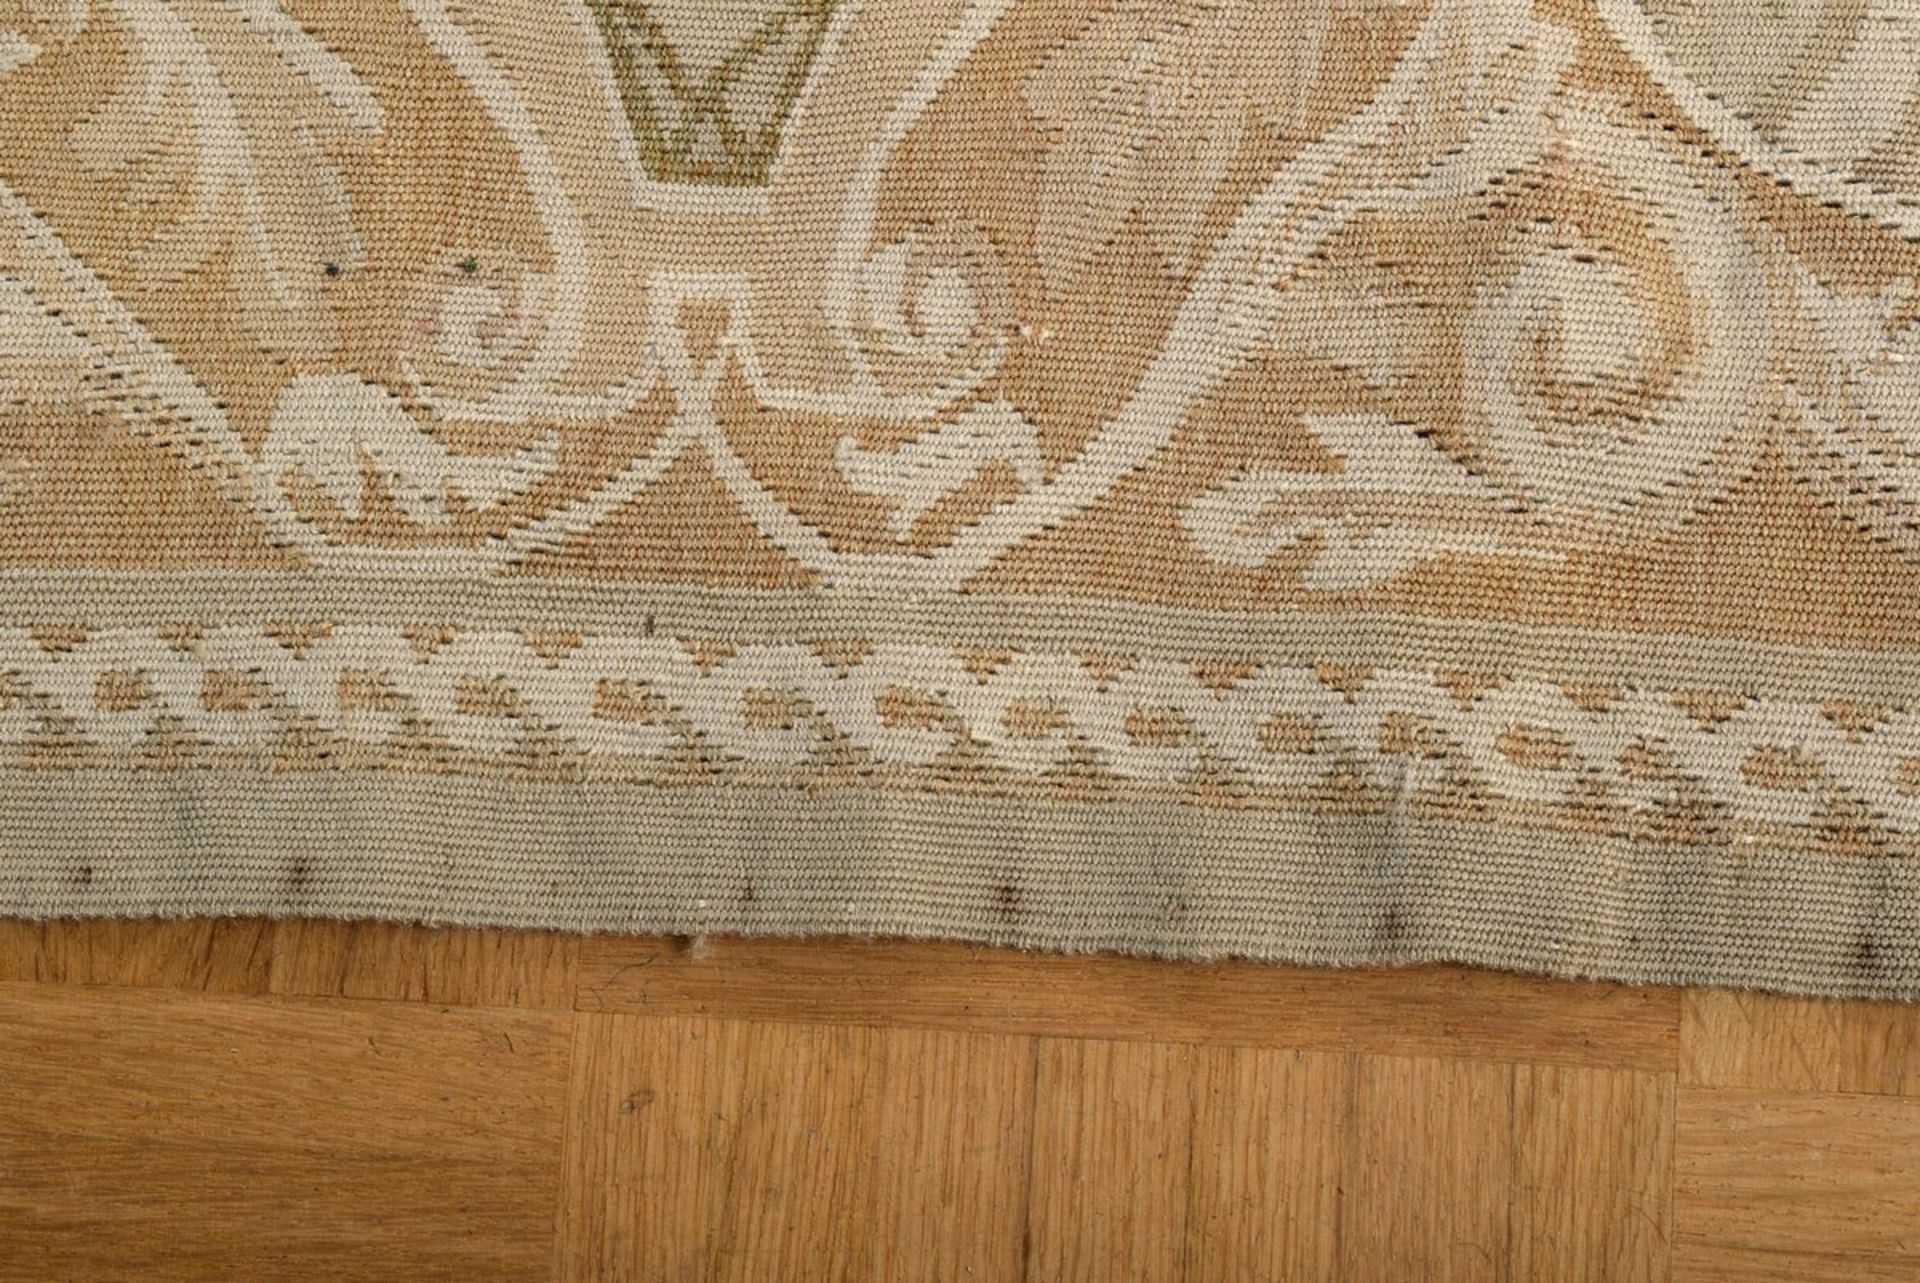 Großer Aubusson Teppich in Grün- und Beigetönen nach altem Vorbild, 20.Jh., 280x310cm - Bild 8 aus 9